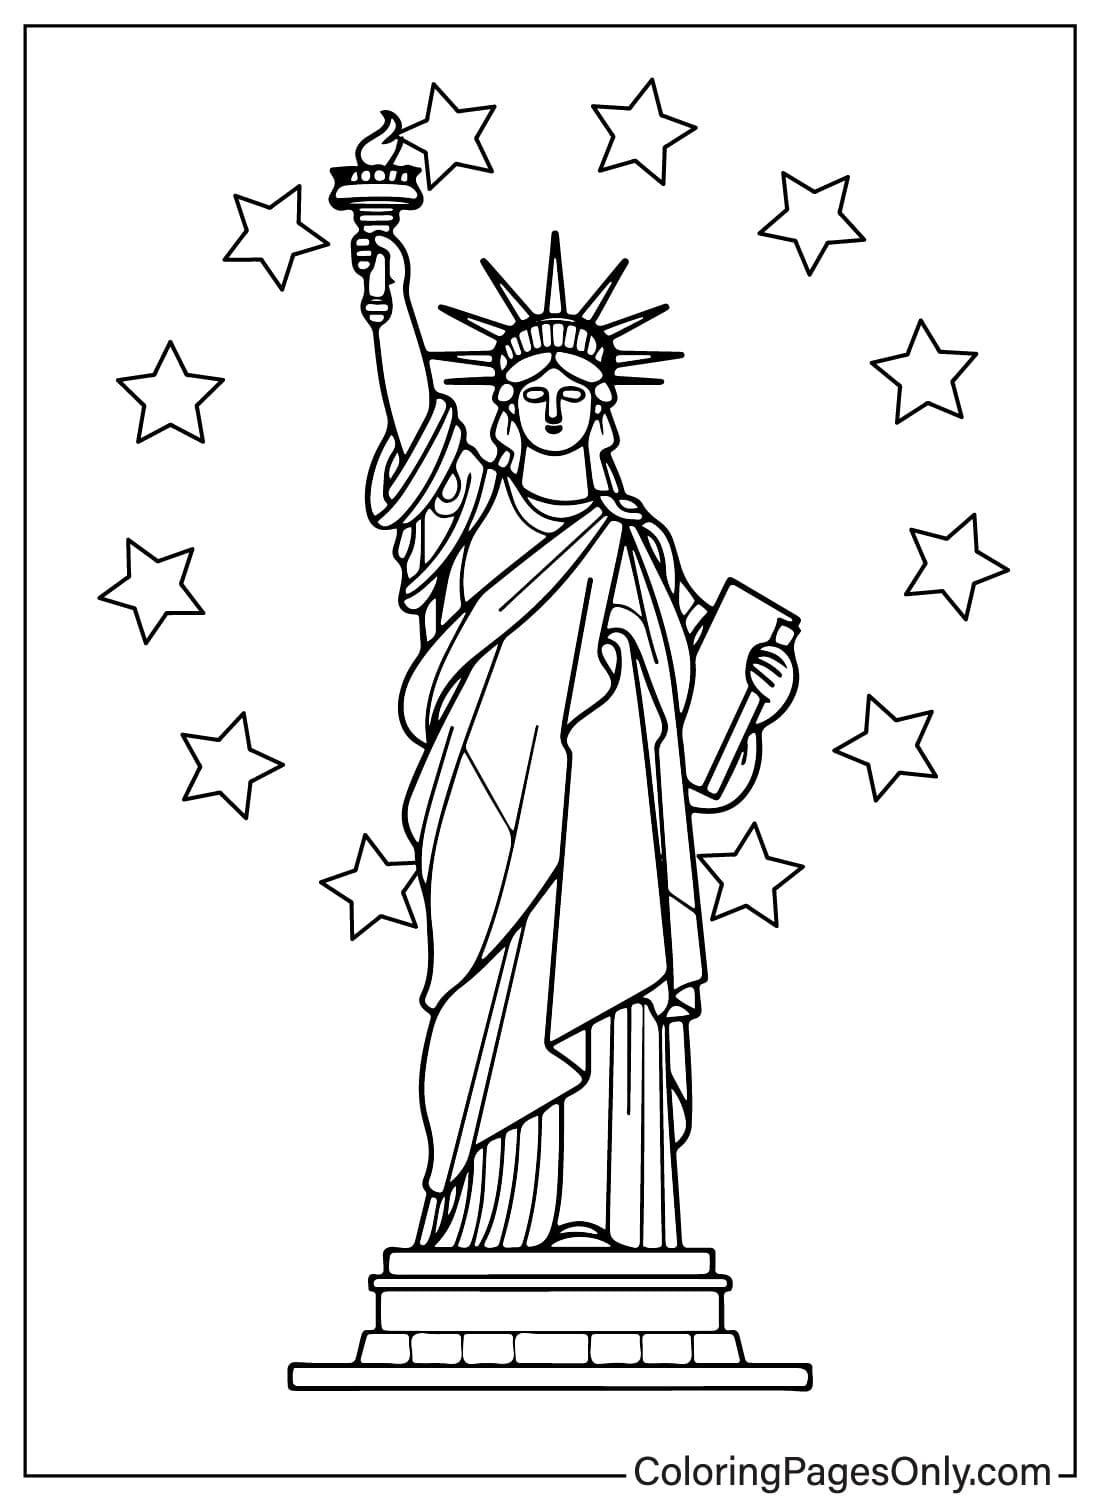 Immagine della Statua della Libertà da colorare